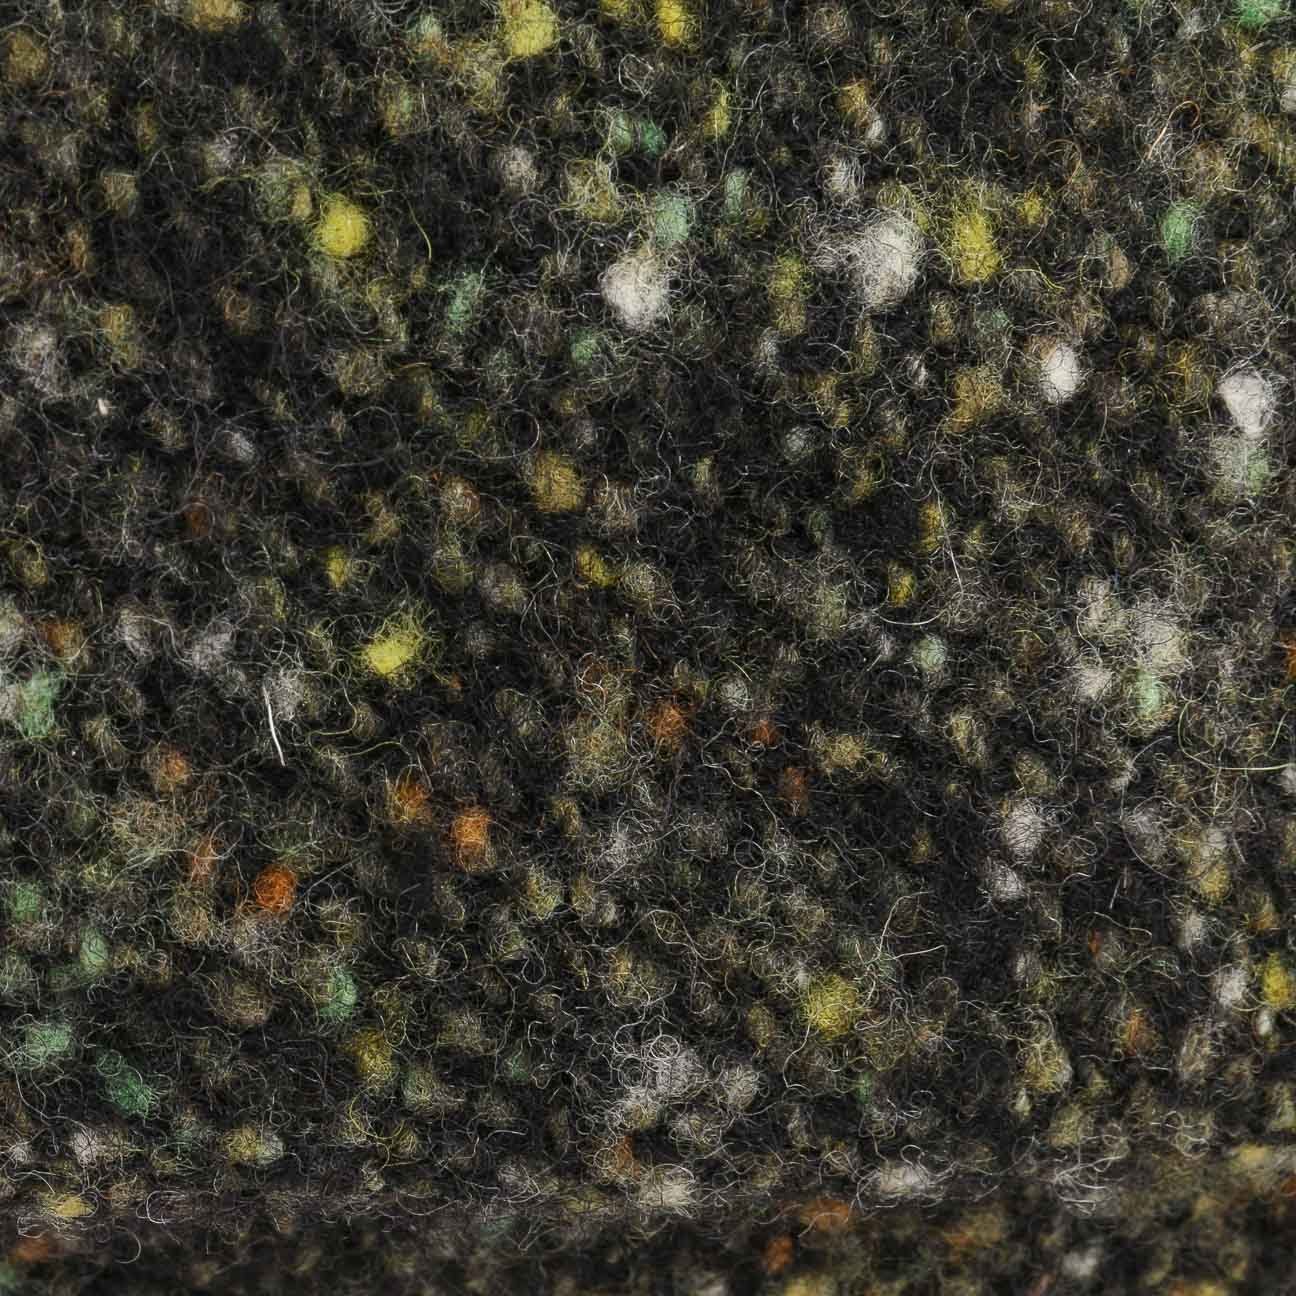 Stetson Flat Cap (1-St) oliv-schwarz mit Wollcap Schirm